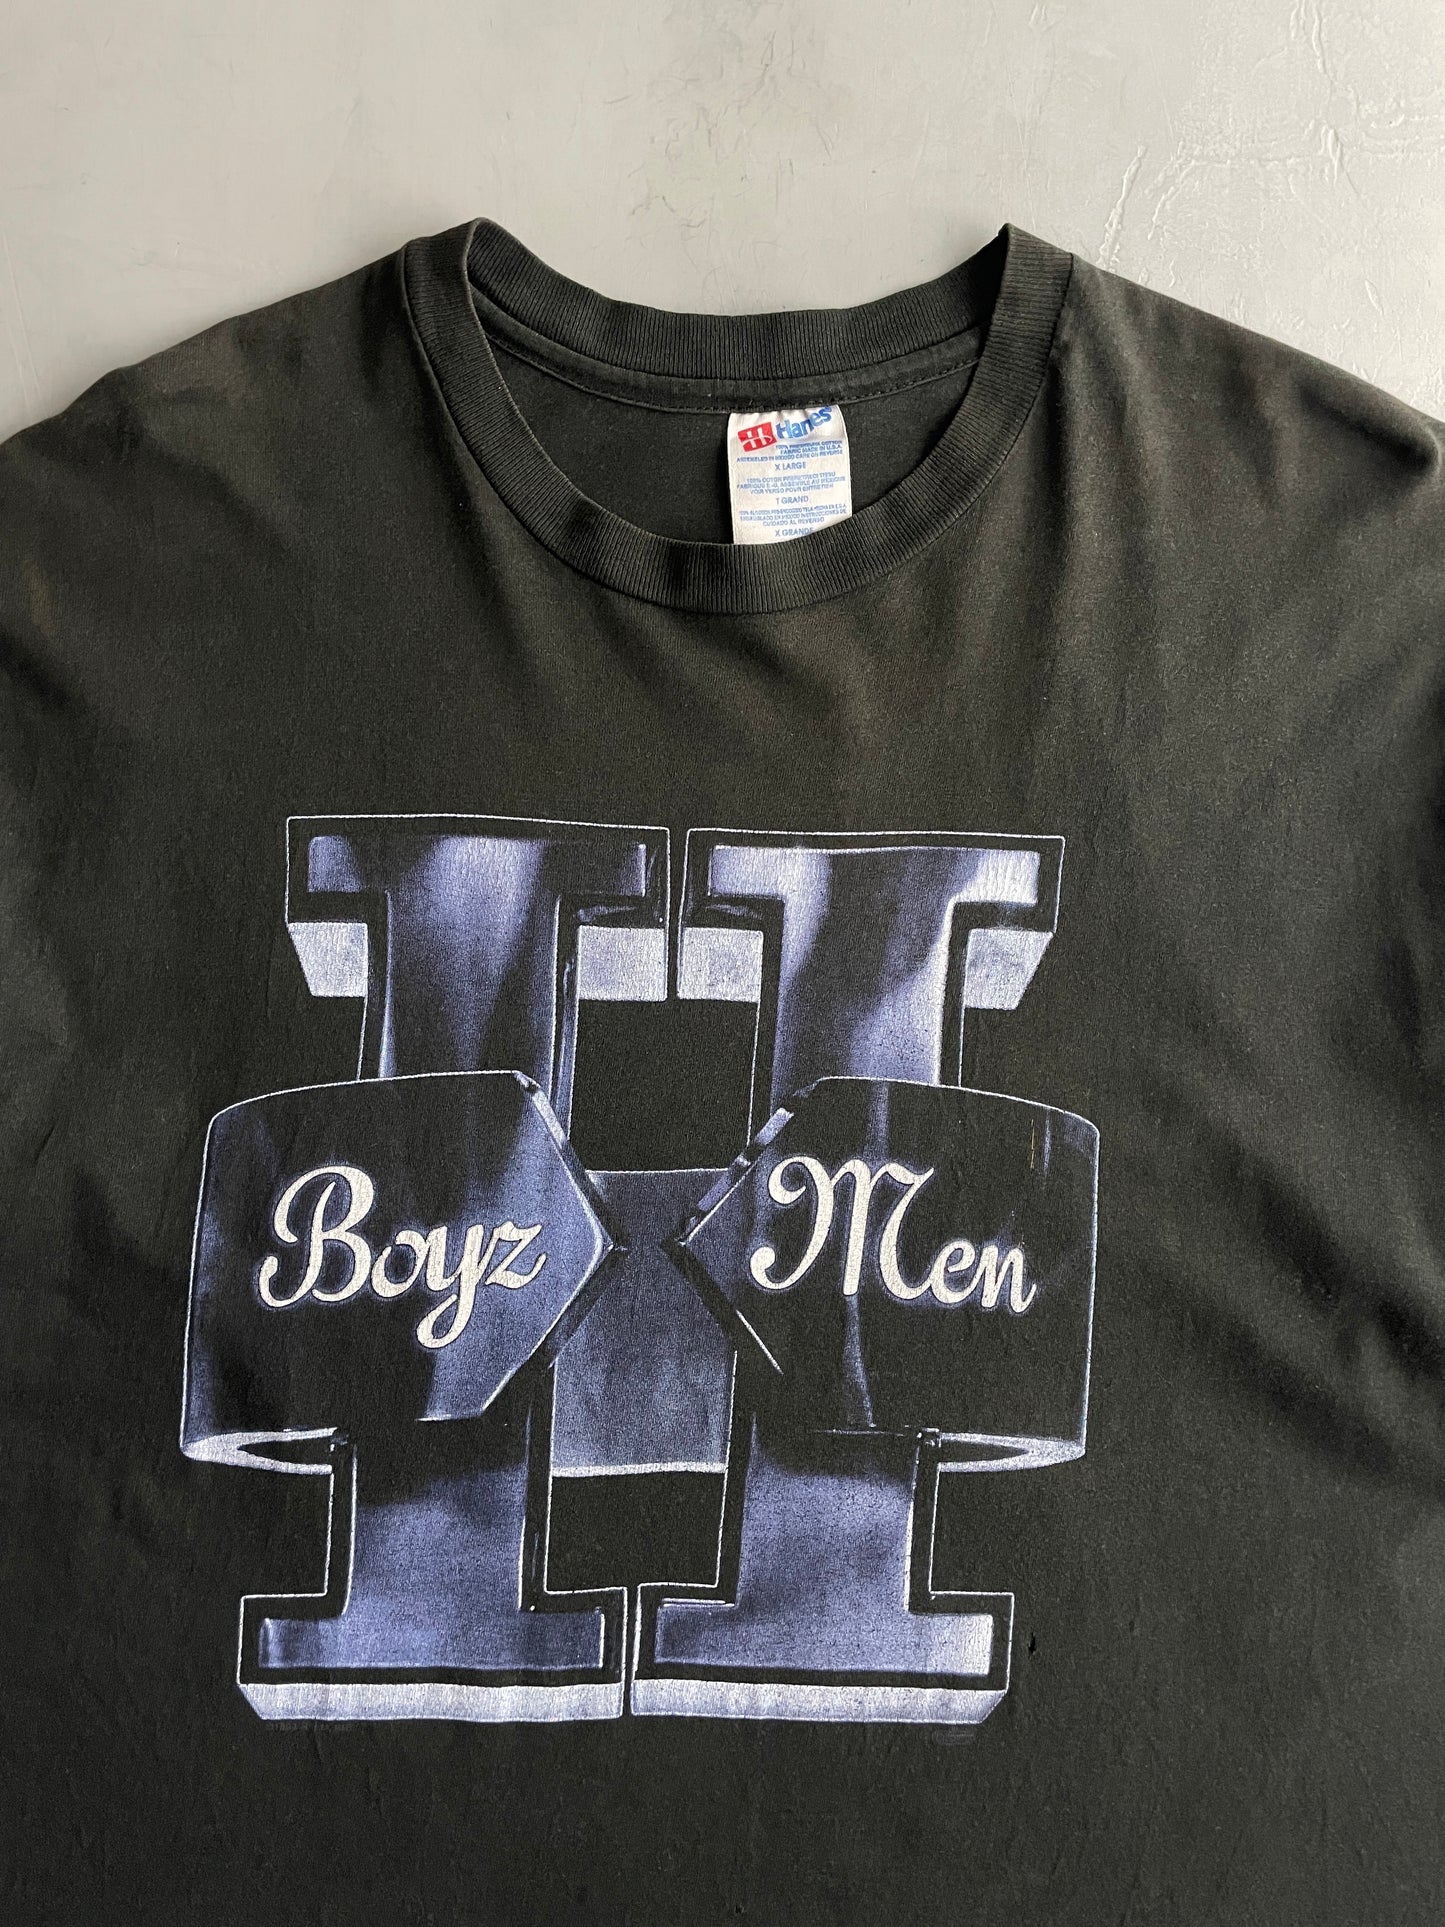 '94 Boys II Men Tee [XL]